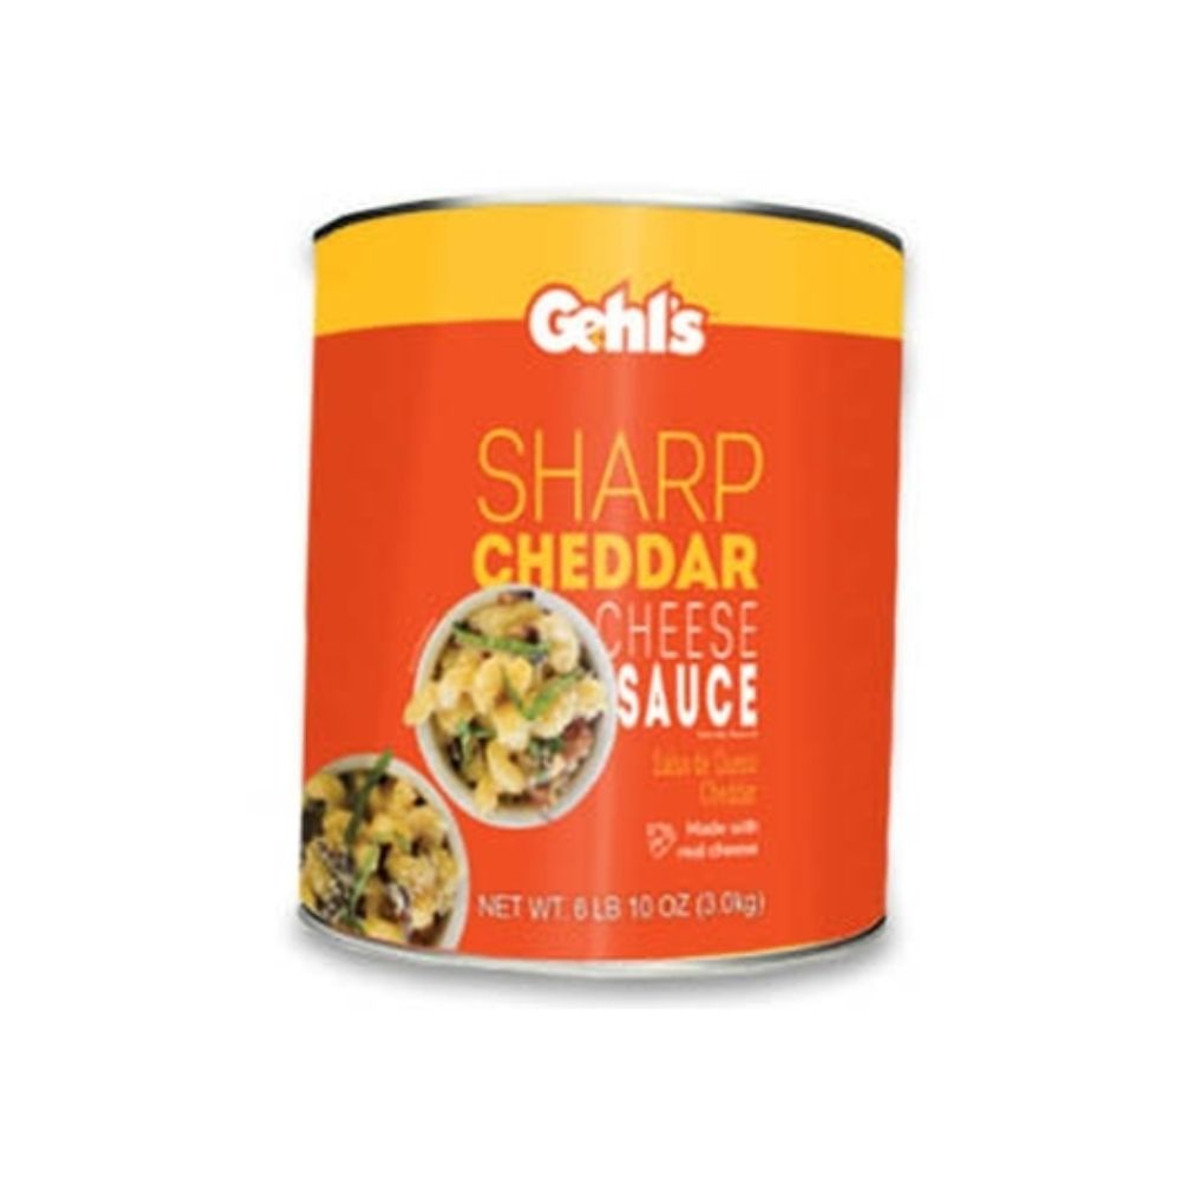 Gehl's Sharp Cheddar Sauce